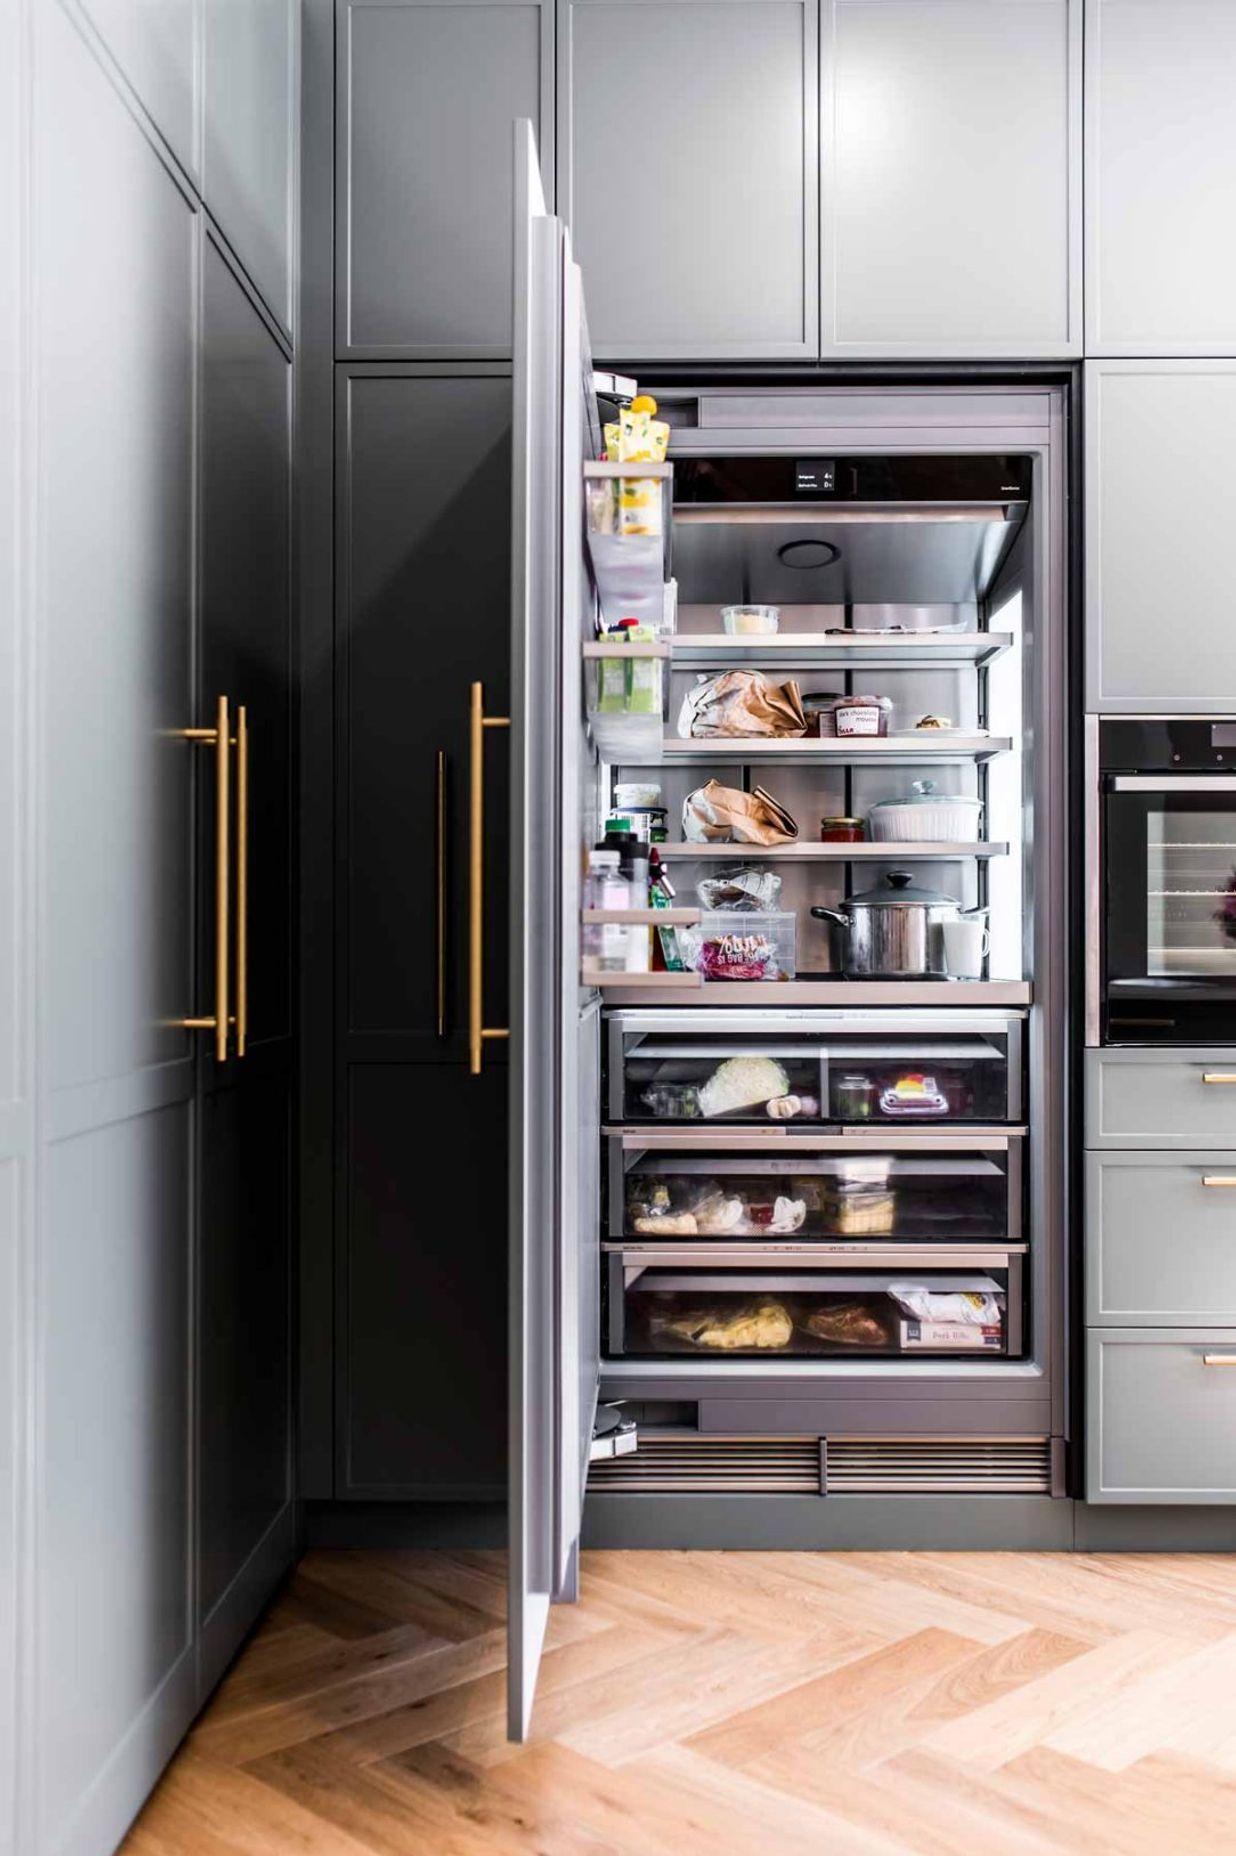 modern-luxury-kitchen-design-premier-kitchens-stone-benchtop-renovations-neff-appliances-11-liebherr-monolith-fridge-1084x1629.jpg